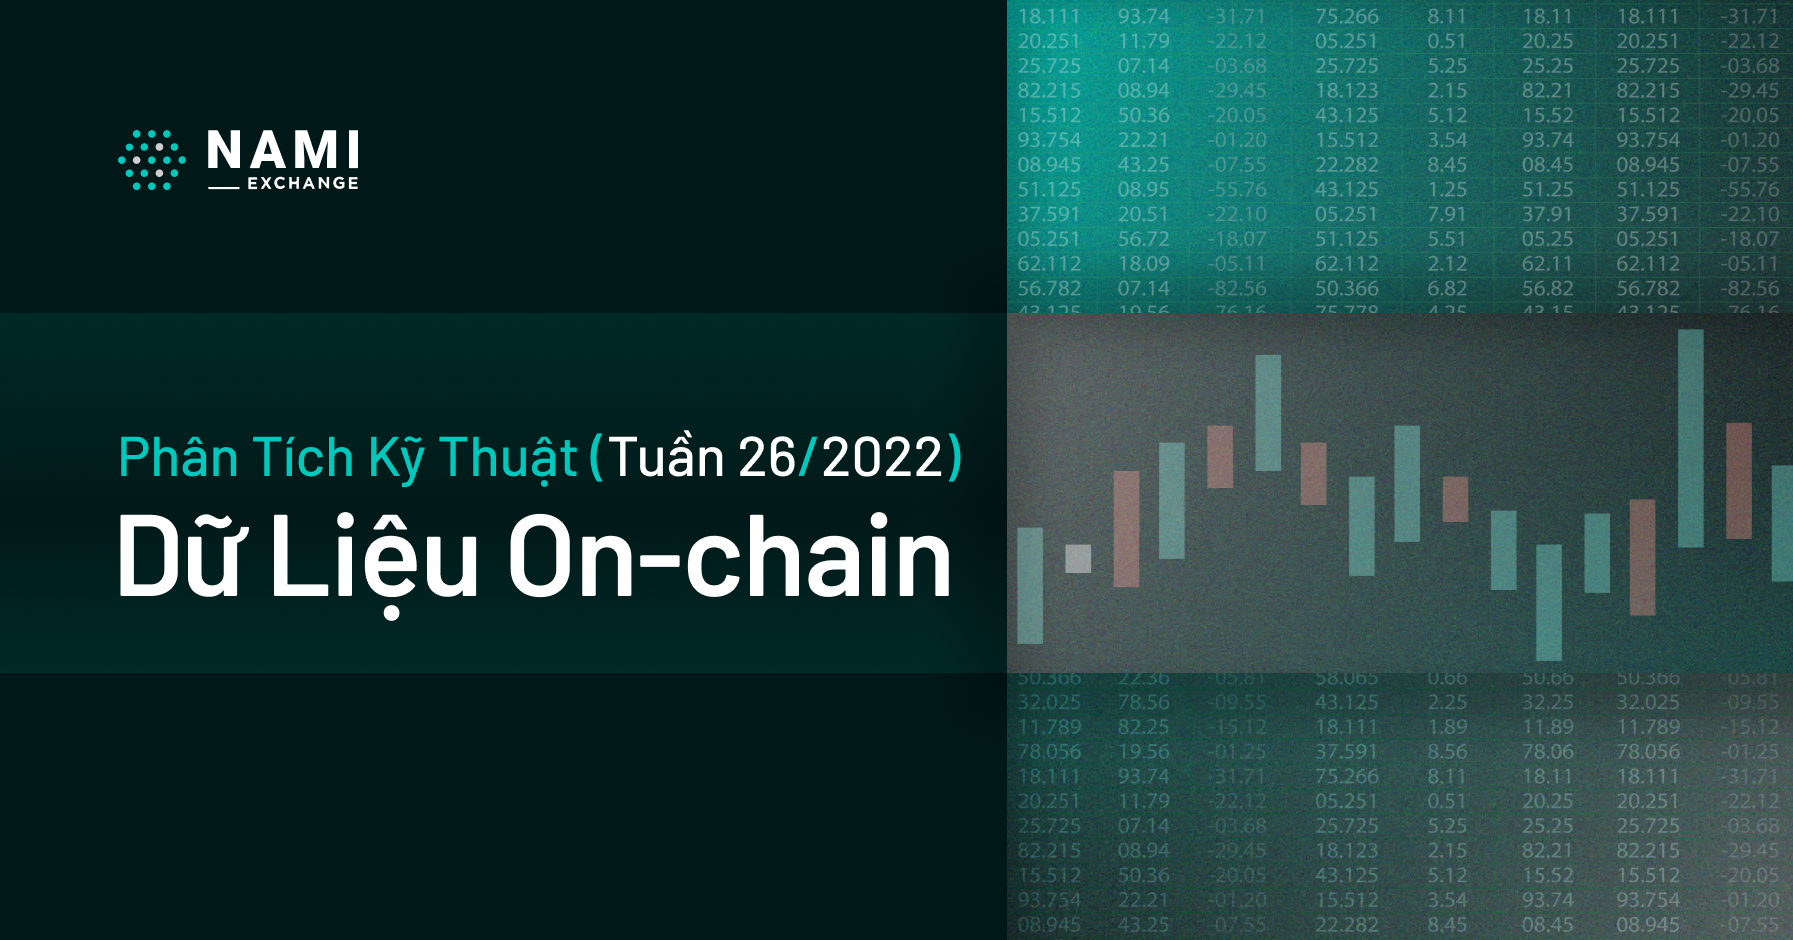 Phân tích dữ liệu On-chain (tuần 26/2022)